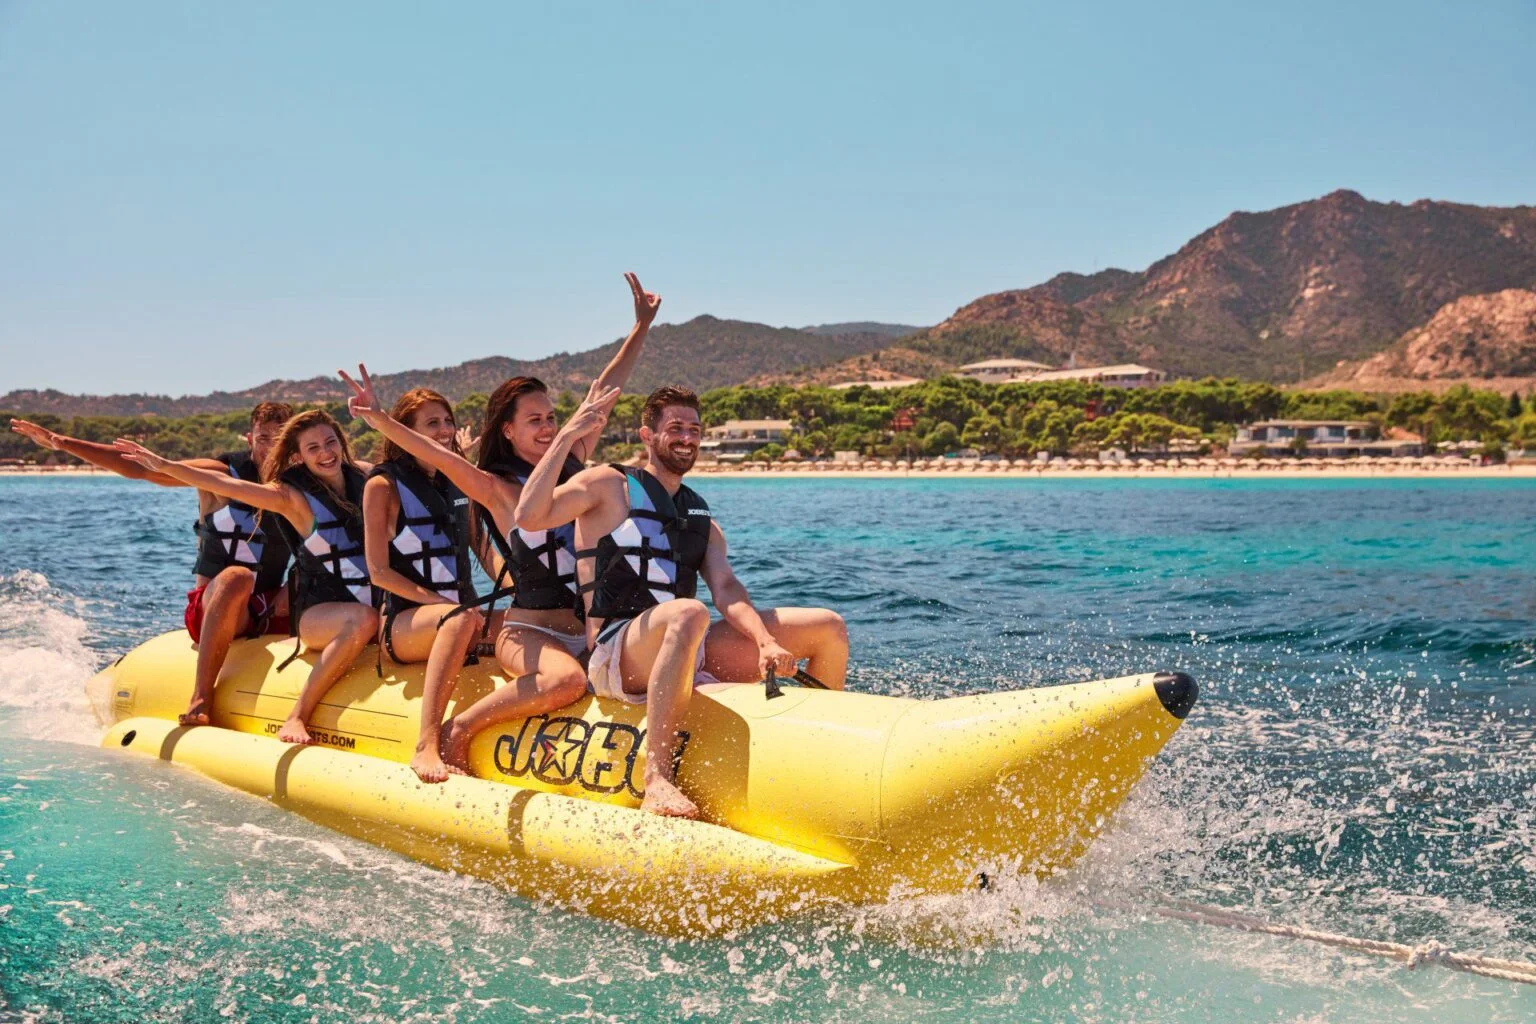 водные виды спорта на пляже Сардинии - мужчины на спортивной лодке